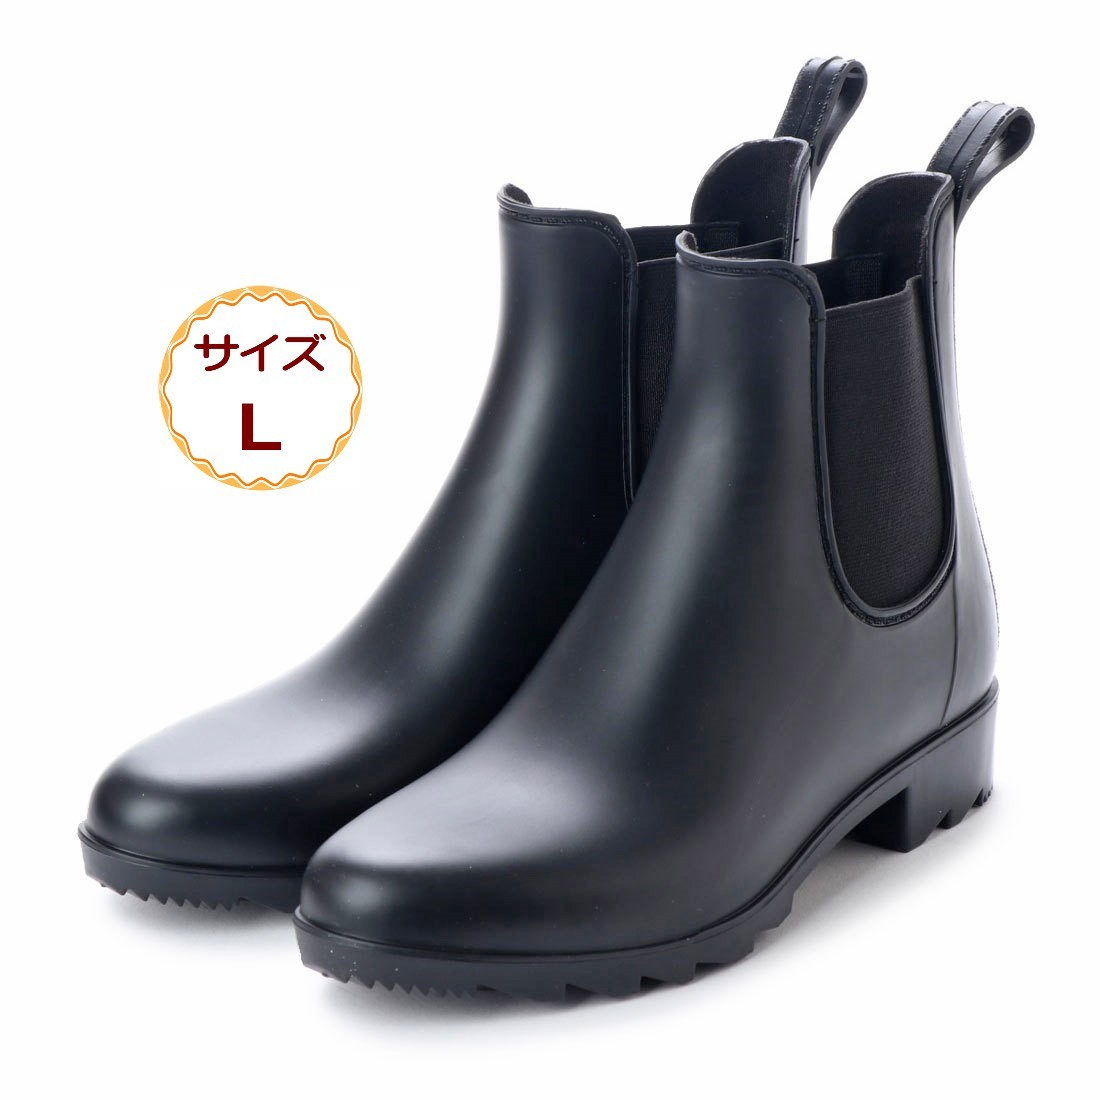  black L size ( 24.0 - 24.5cm ) Short rain boots side-gore Chelsea rain shoes rain boots black 18033-blk-L